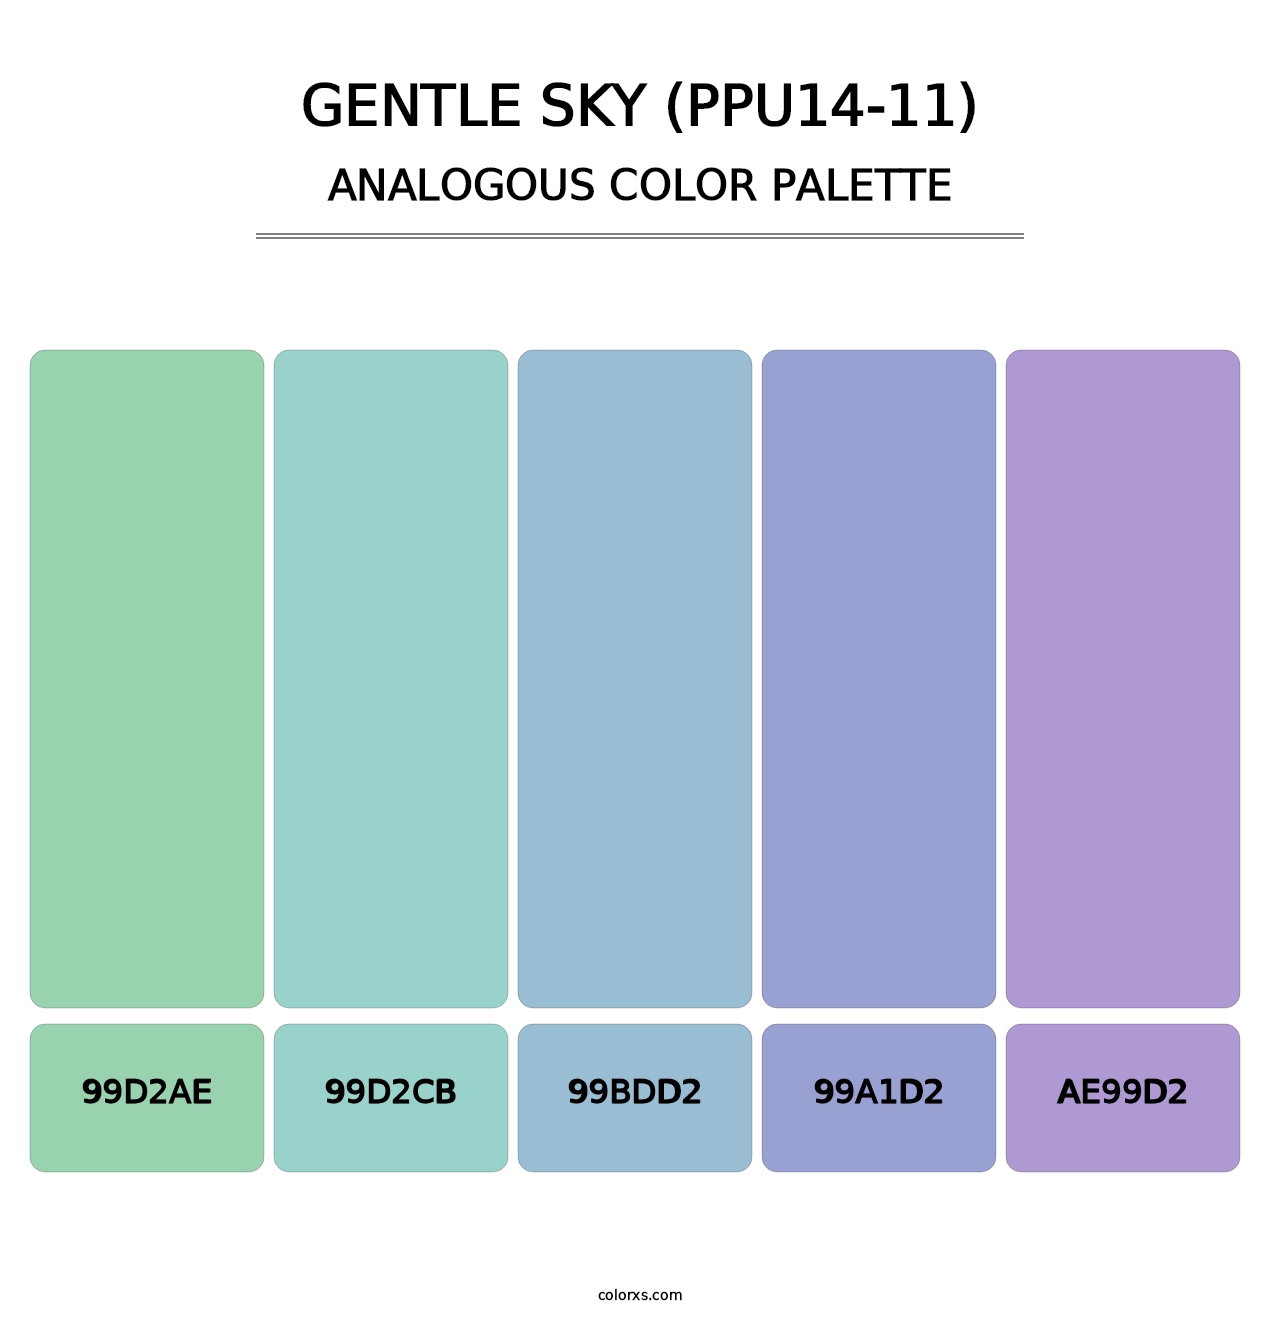 Gentle Sky (PPU14-11) - Analogous Color Palette